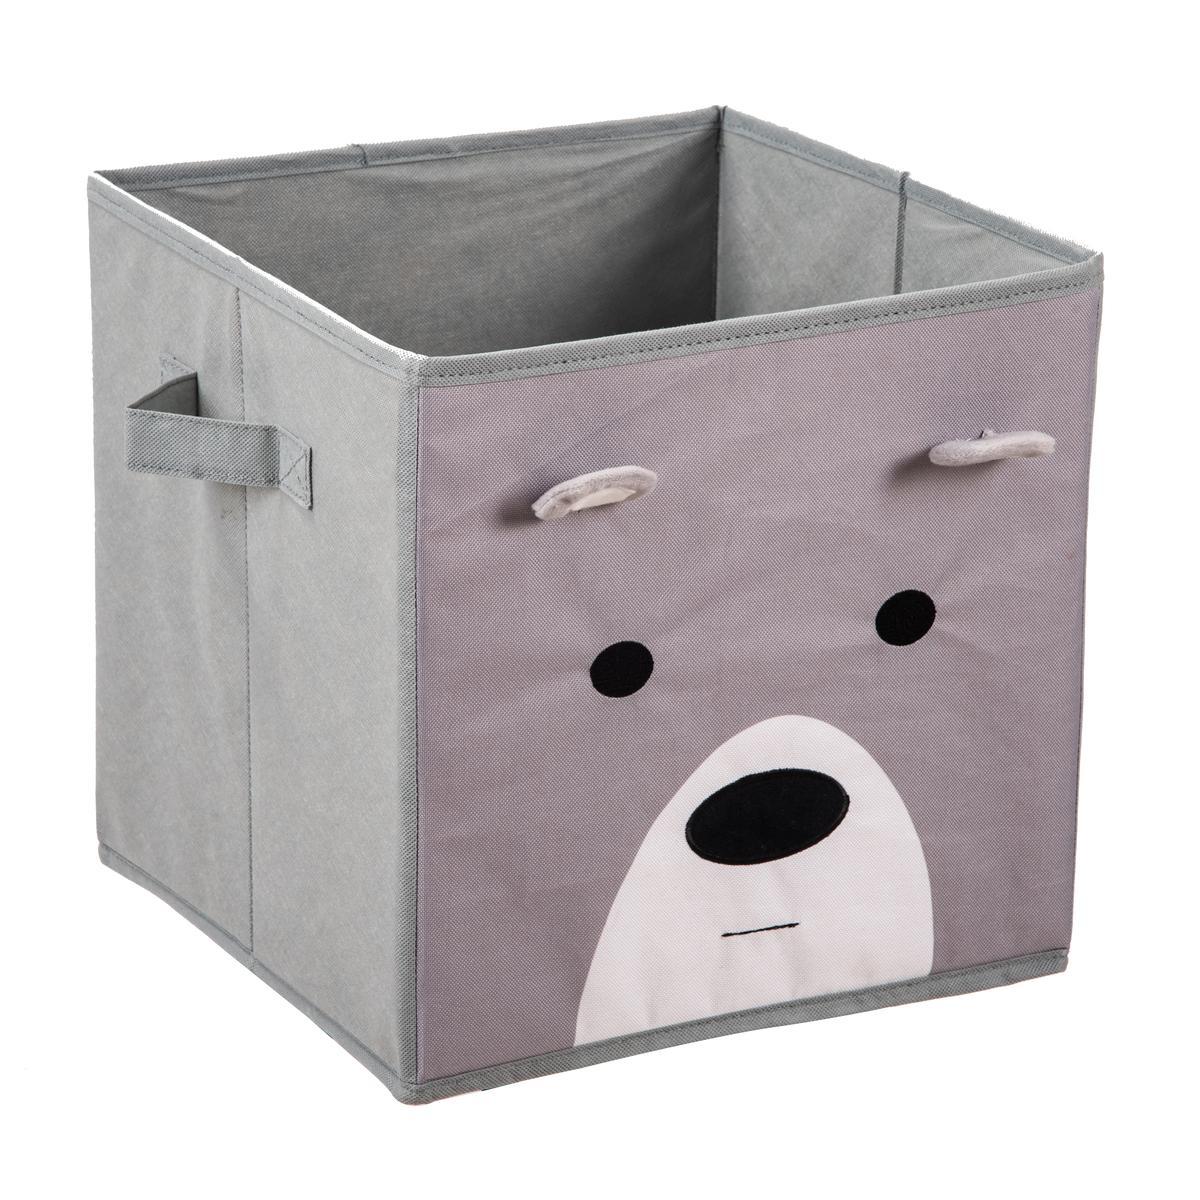 Cube de rangement enfant ours - L 31 x H 31 x l 31 cm - Gris, blanc - MINIK.